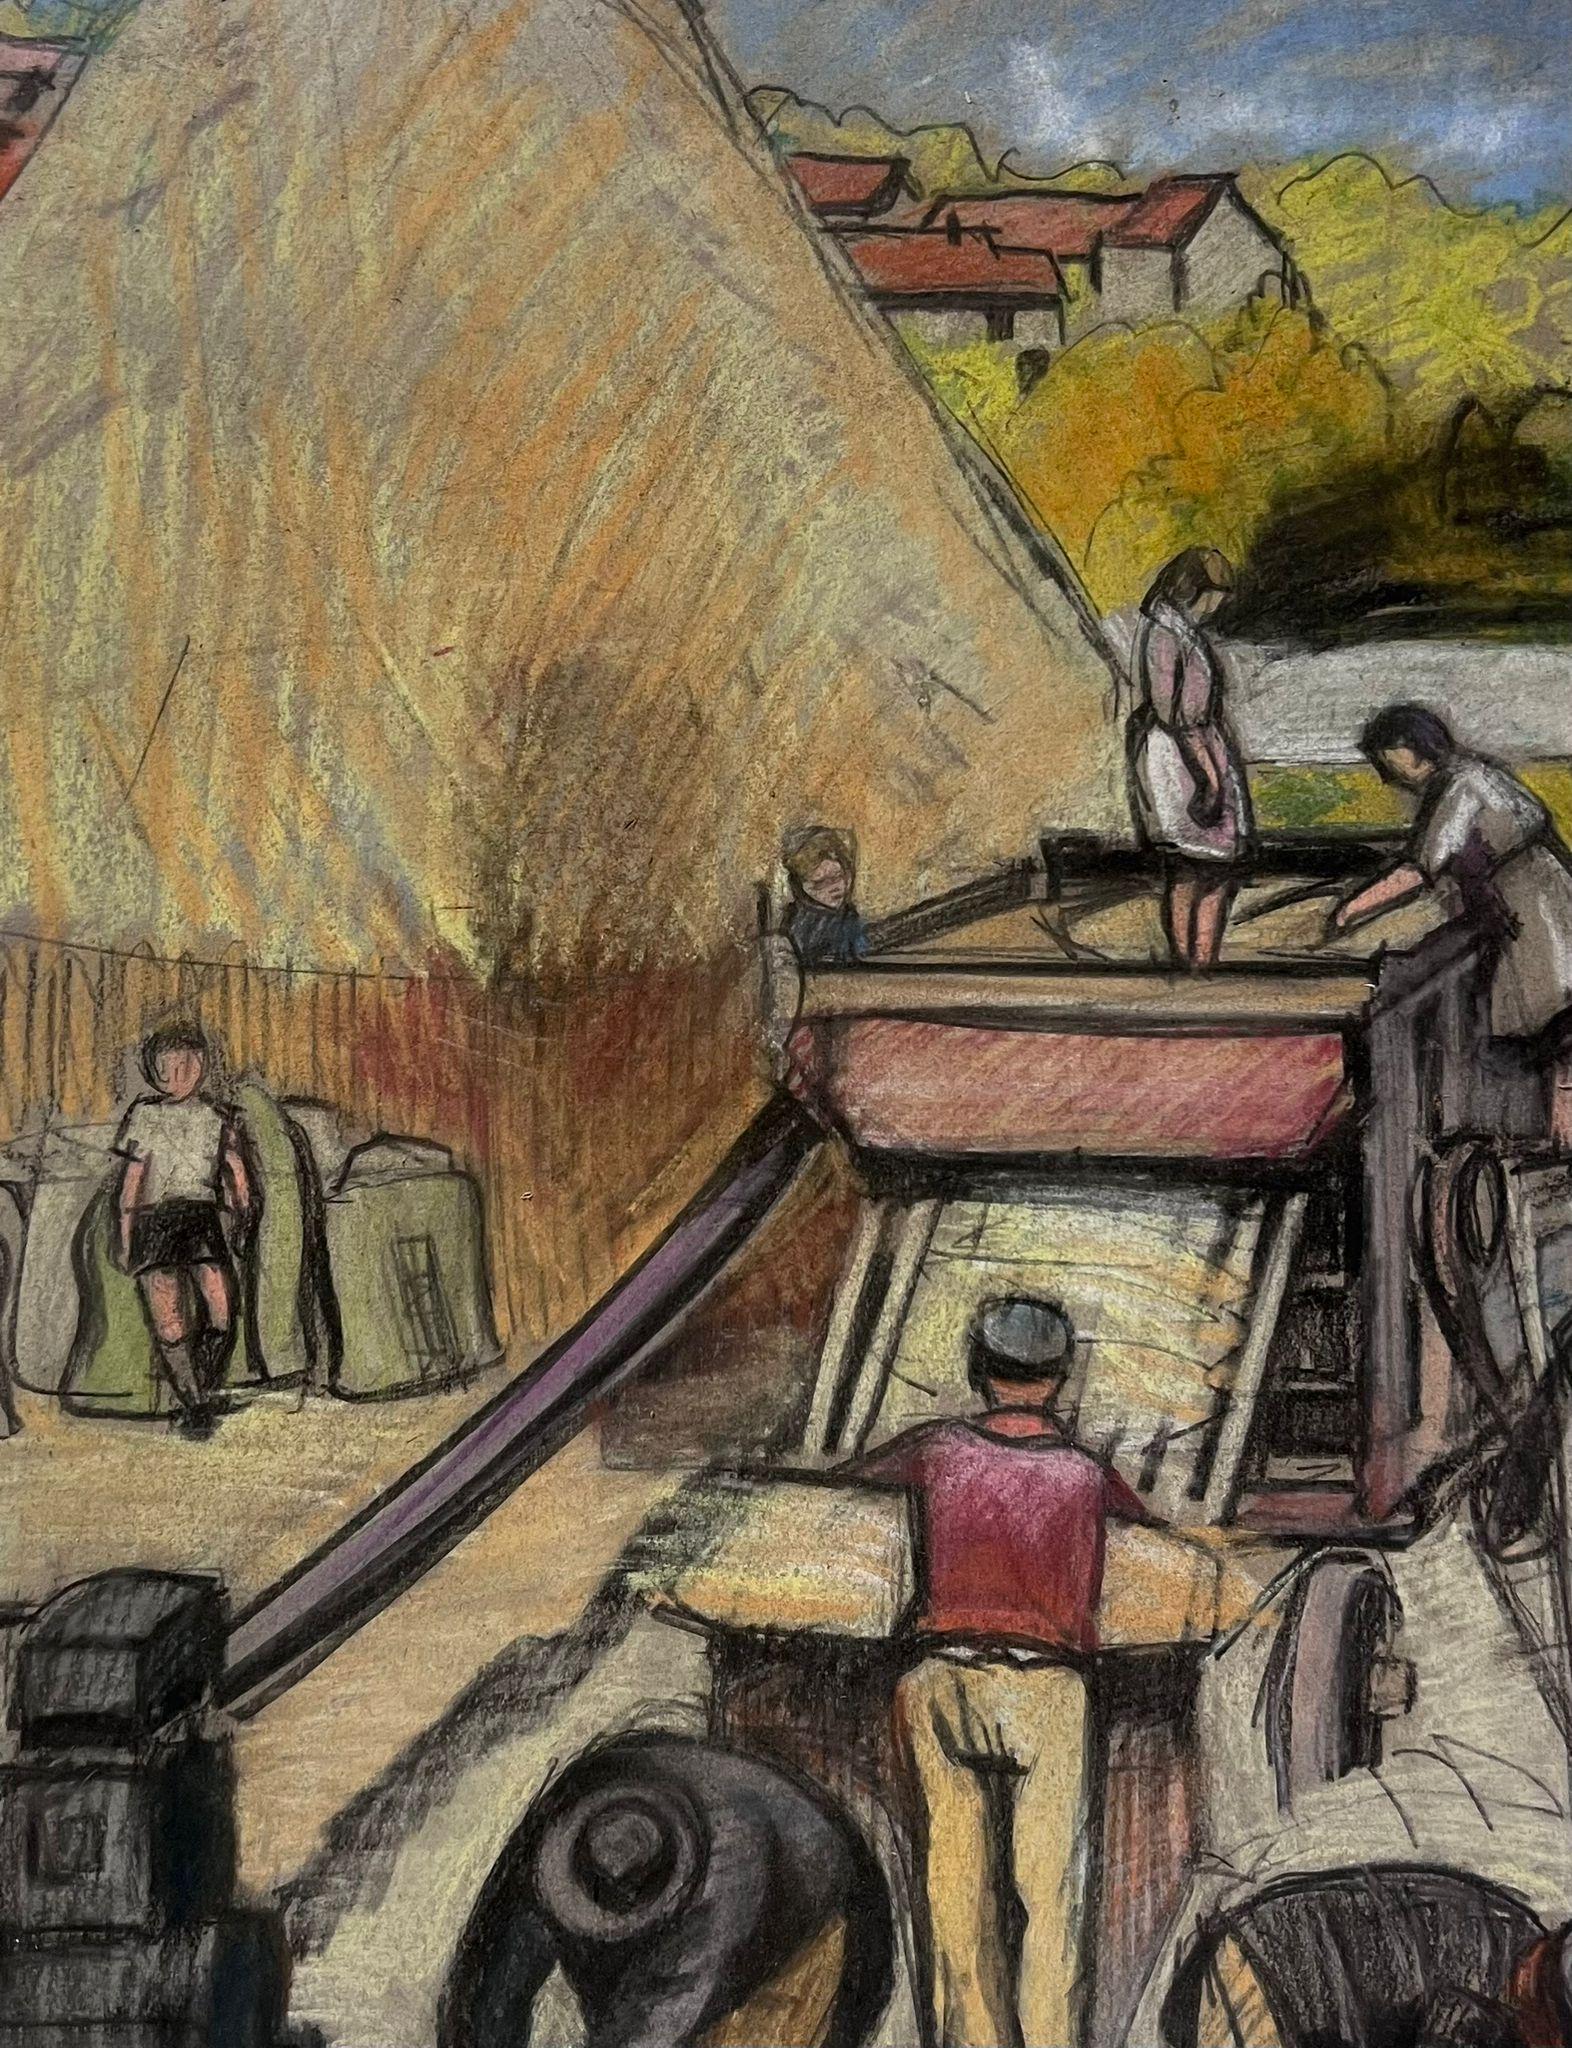 Peinture post-impressionniste française des ouvriers de la moisson brûlant la machine - Painting de 1930's French Post Impressionist